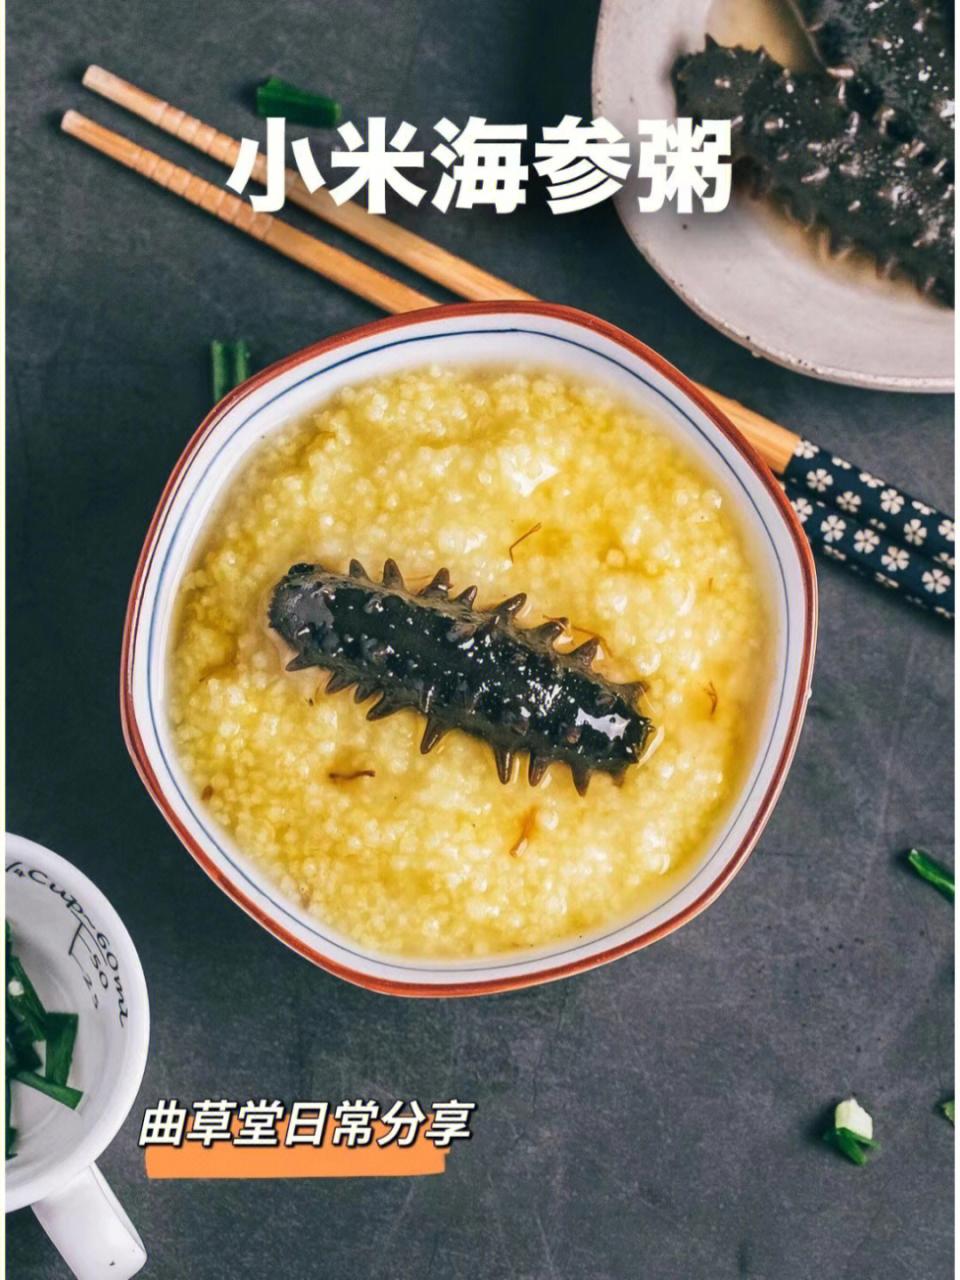 海参小米粥怎么煮